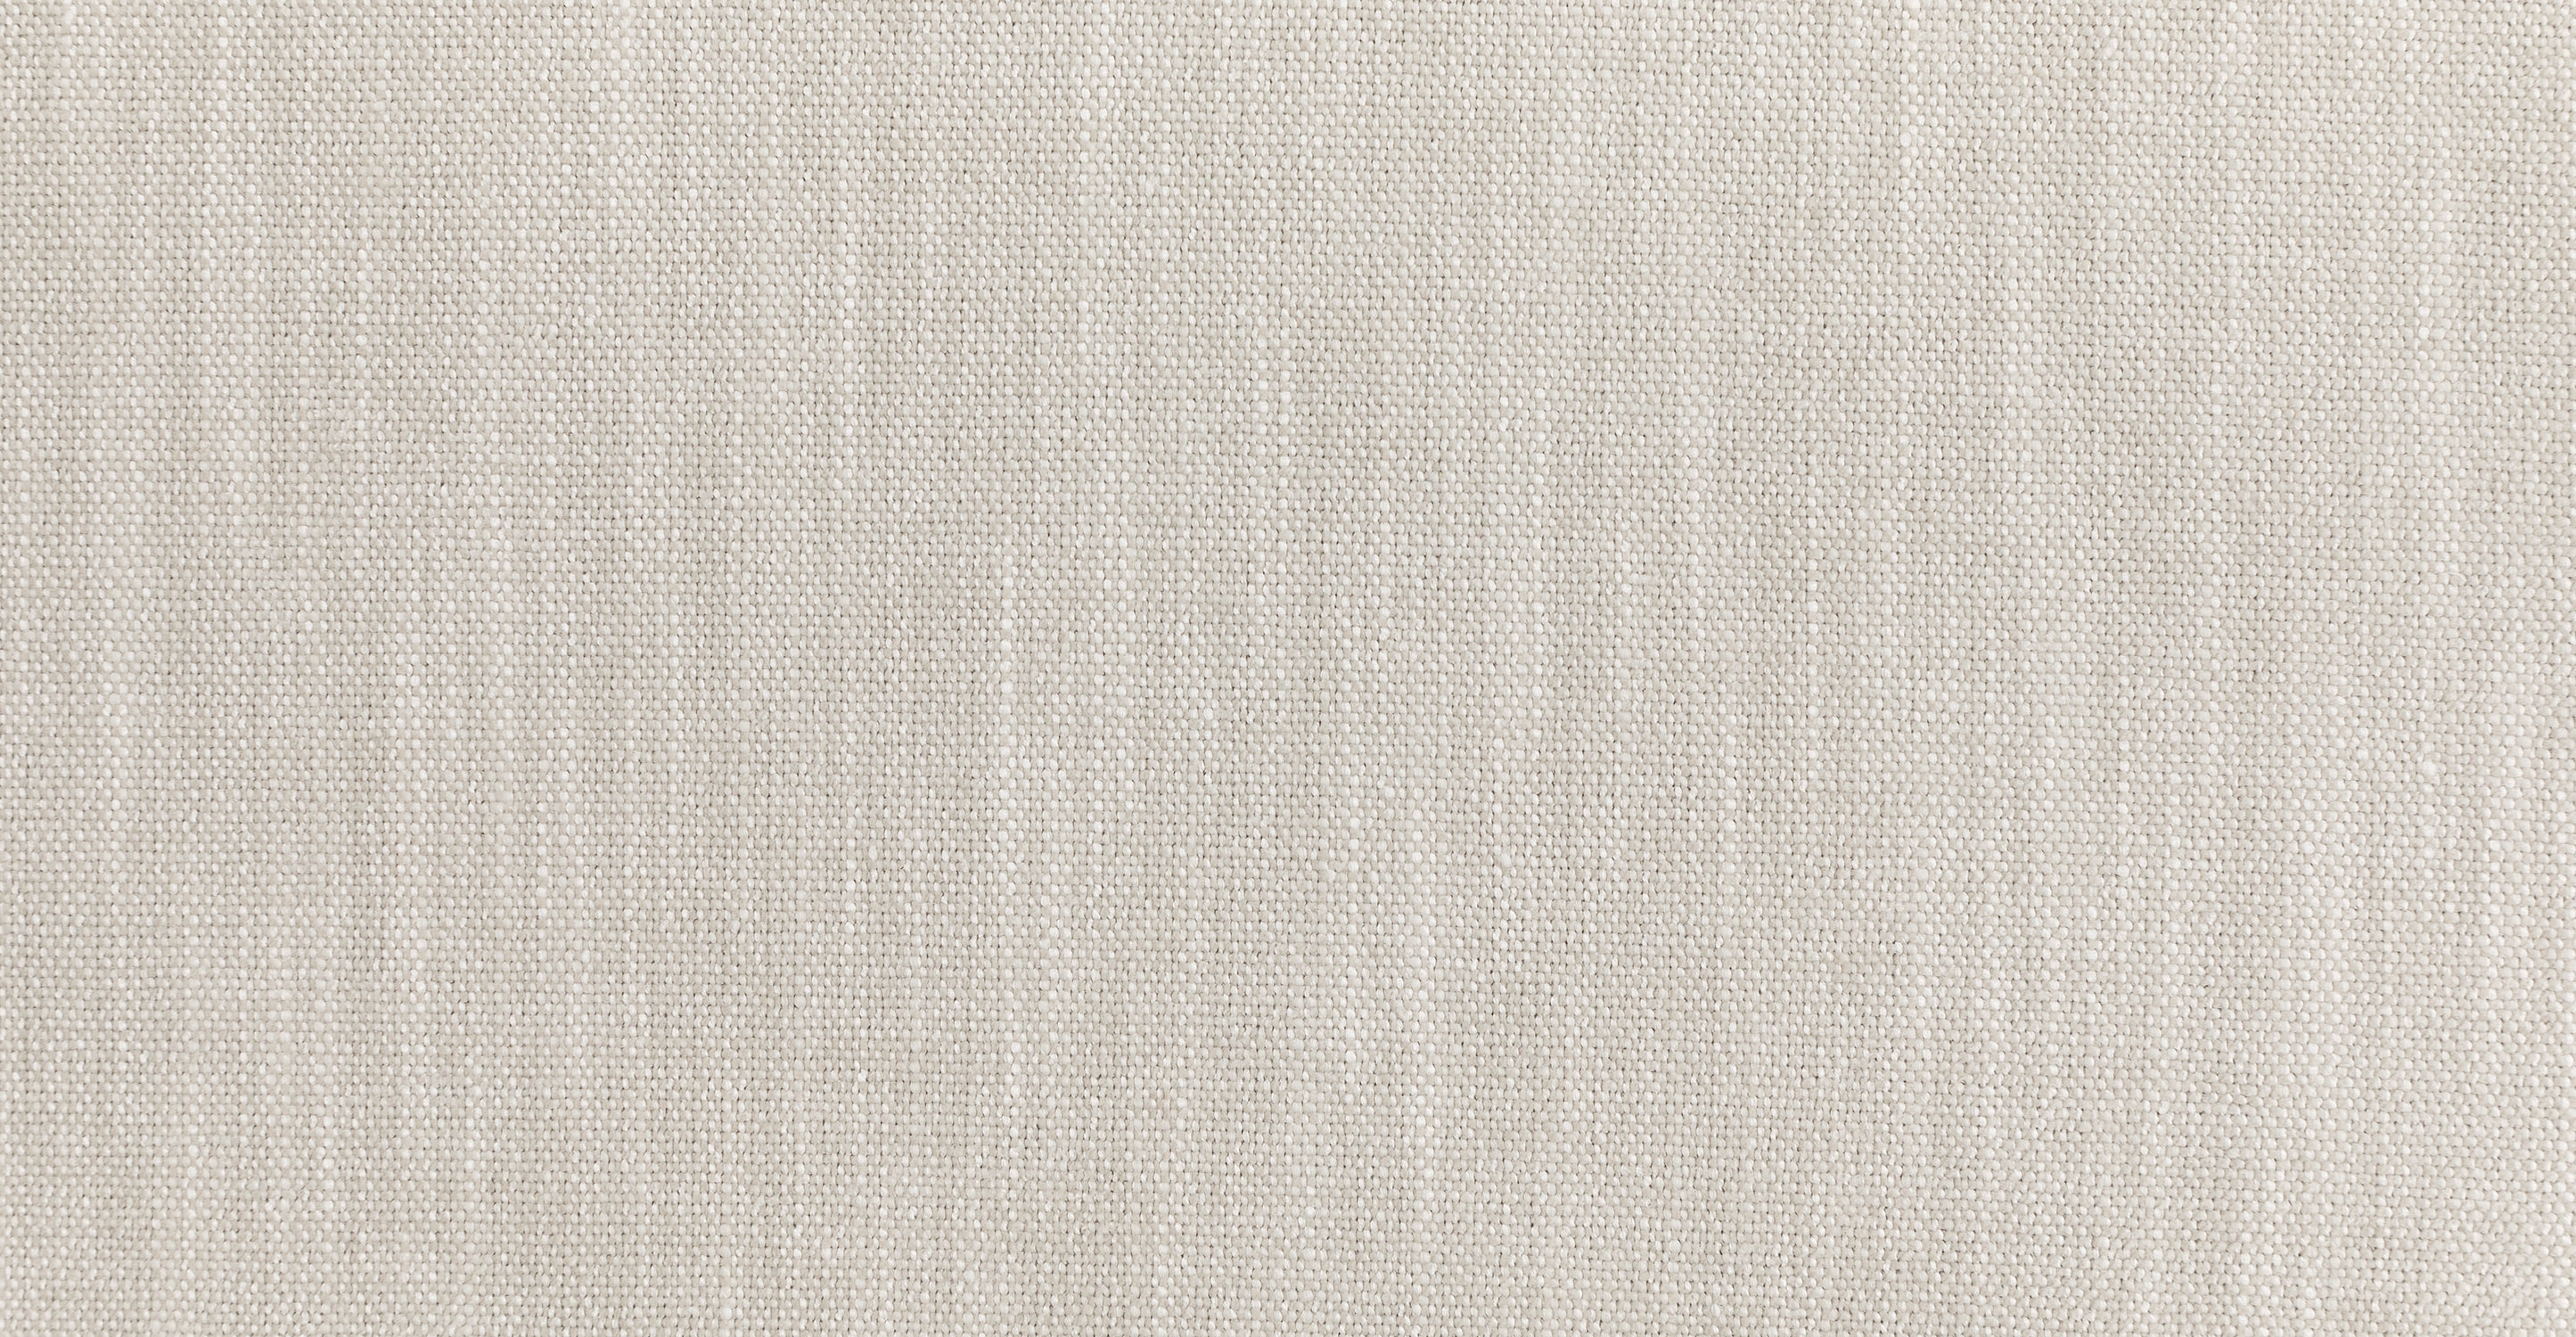 gaba pearl white modular left sectional - Image 7